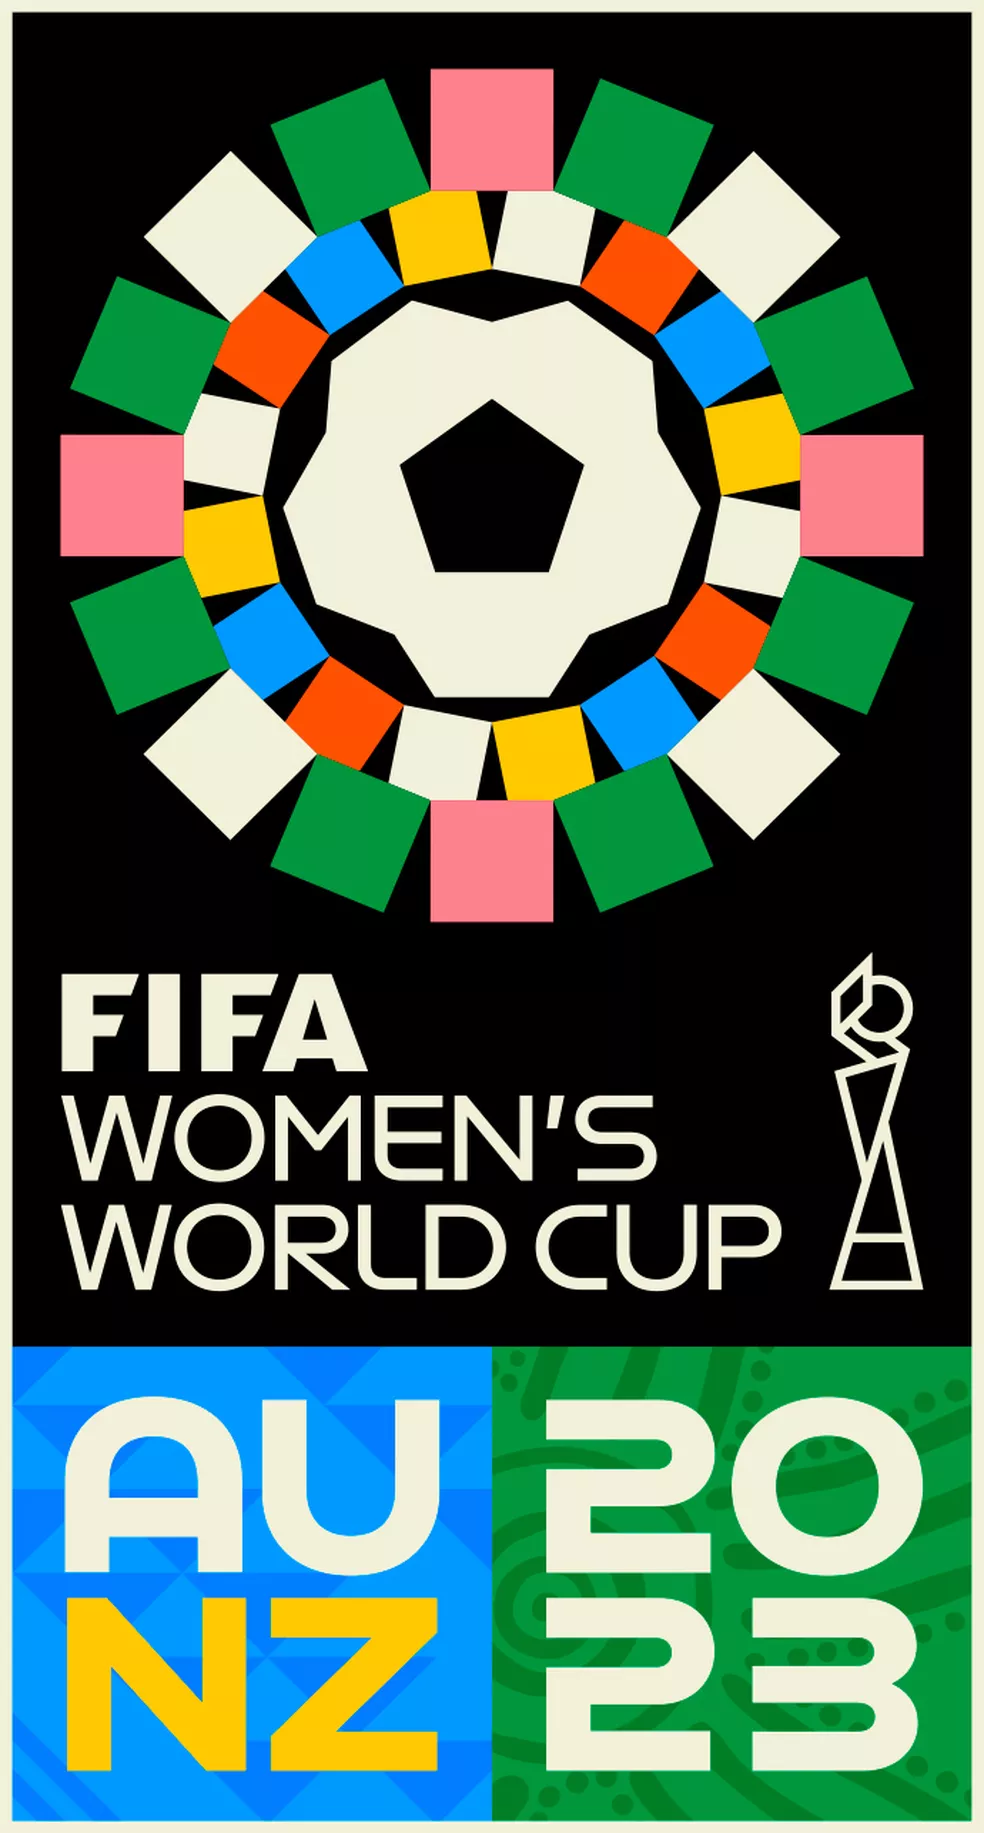 Logotipo Copa do Mundo Feminina FIFA 2023 - FIFA Womens World Cup 2023 Logo 650x366